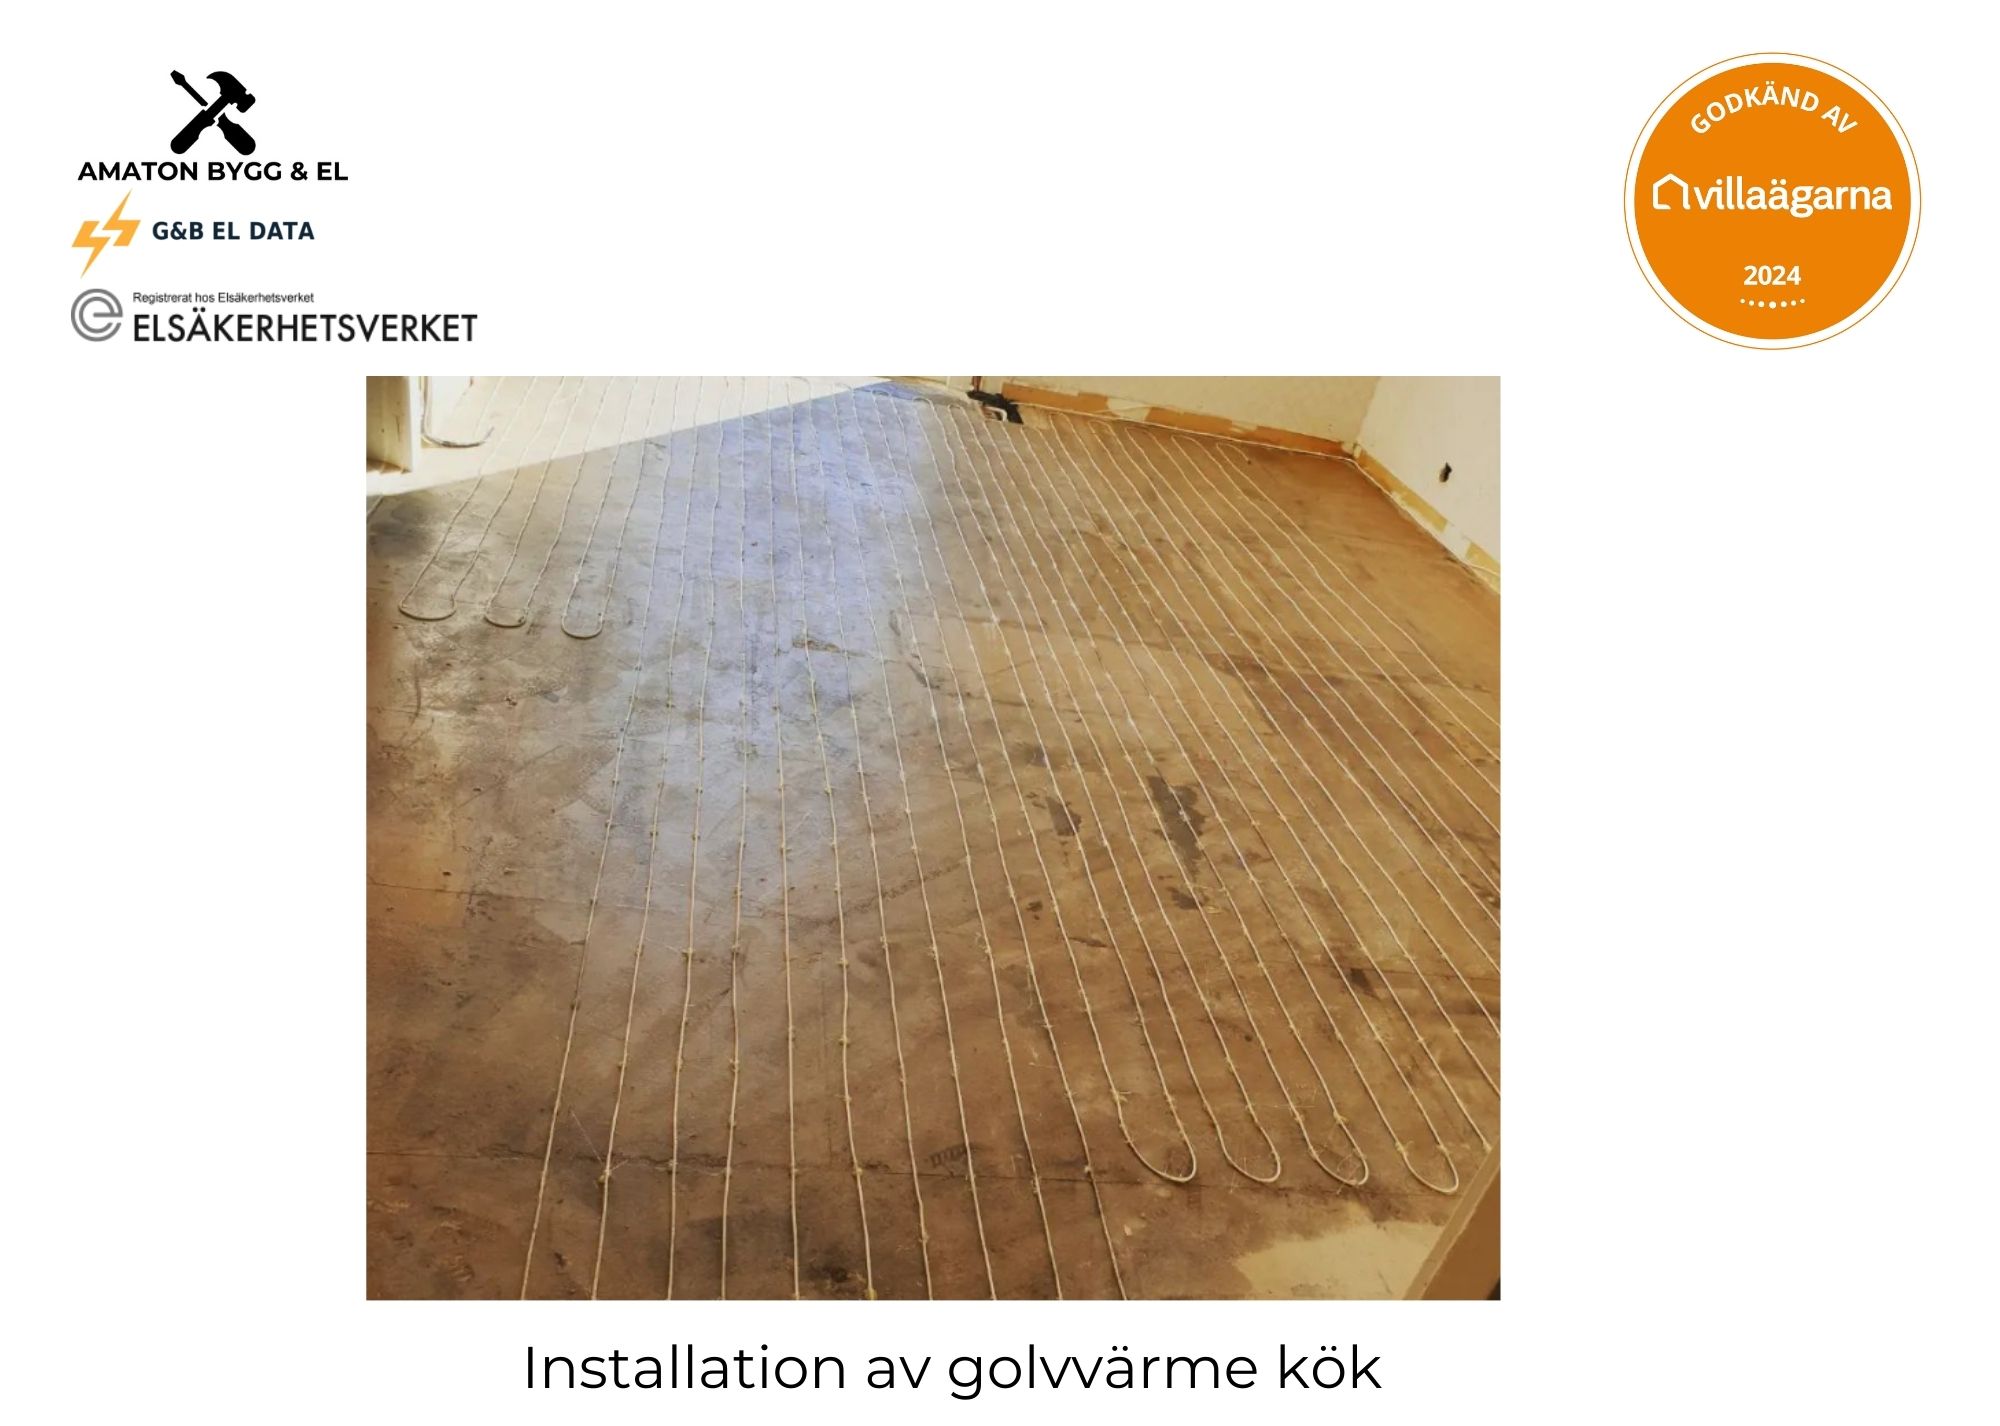 Referensjobb "Installation av golvvärme i kök" utfört av Amaton Bygg & El / Amaton Group AB